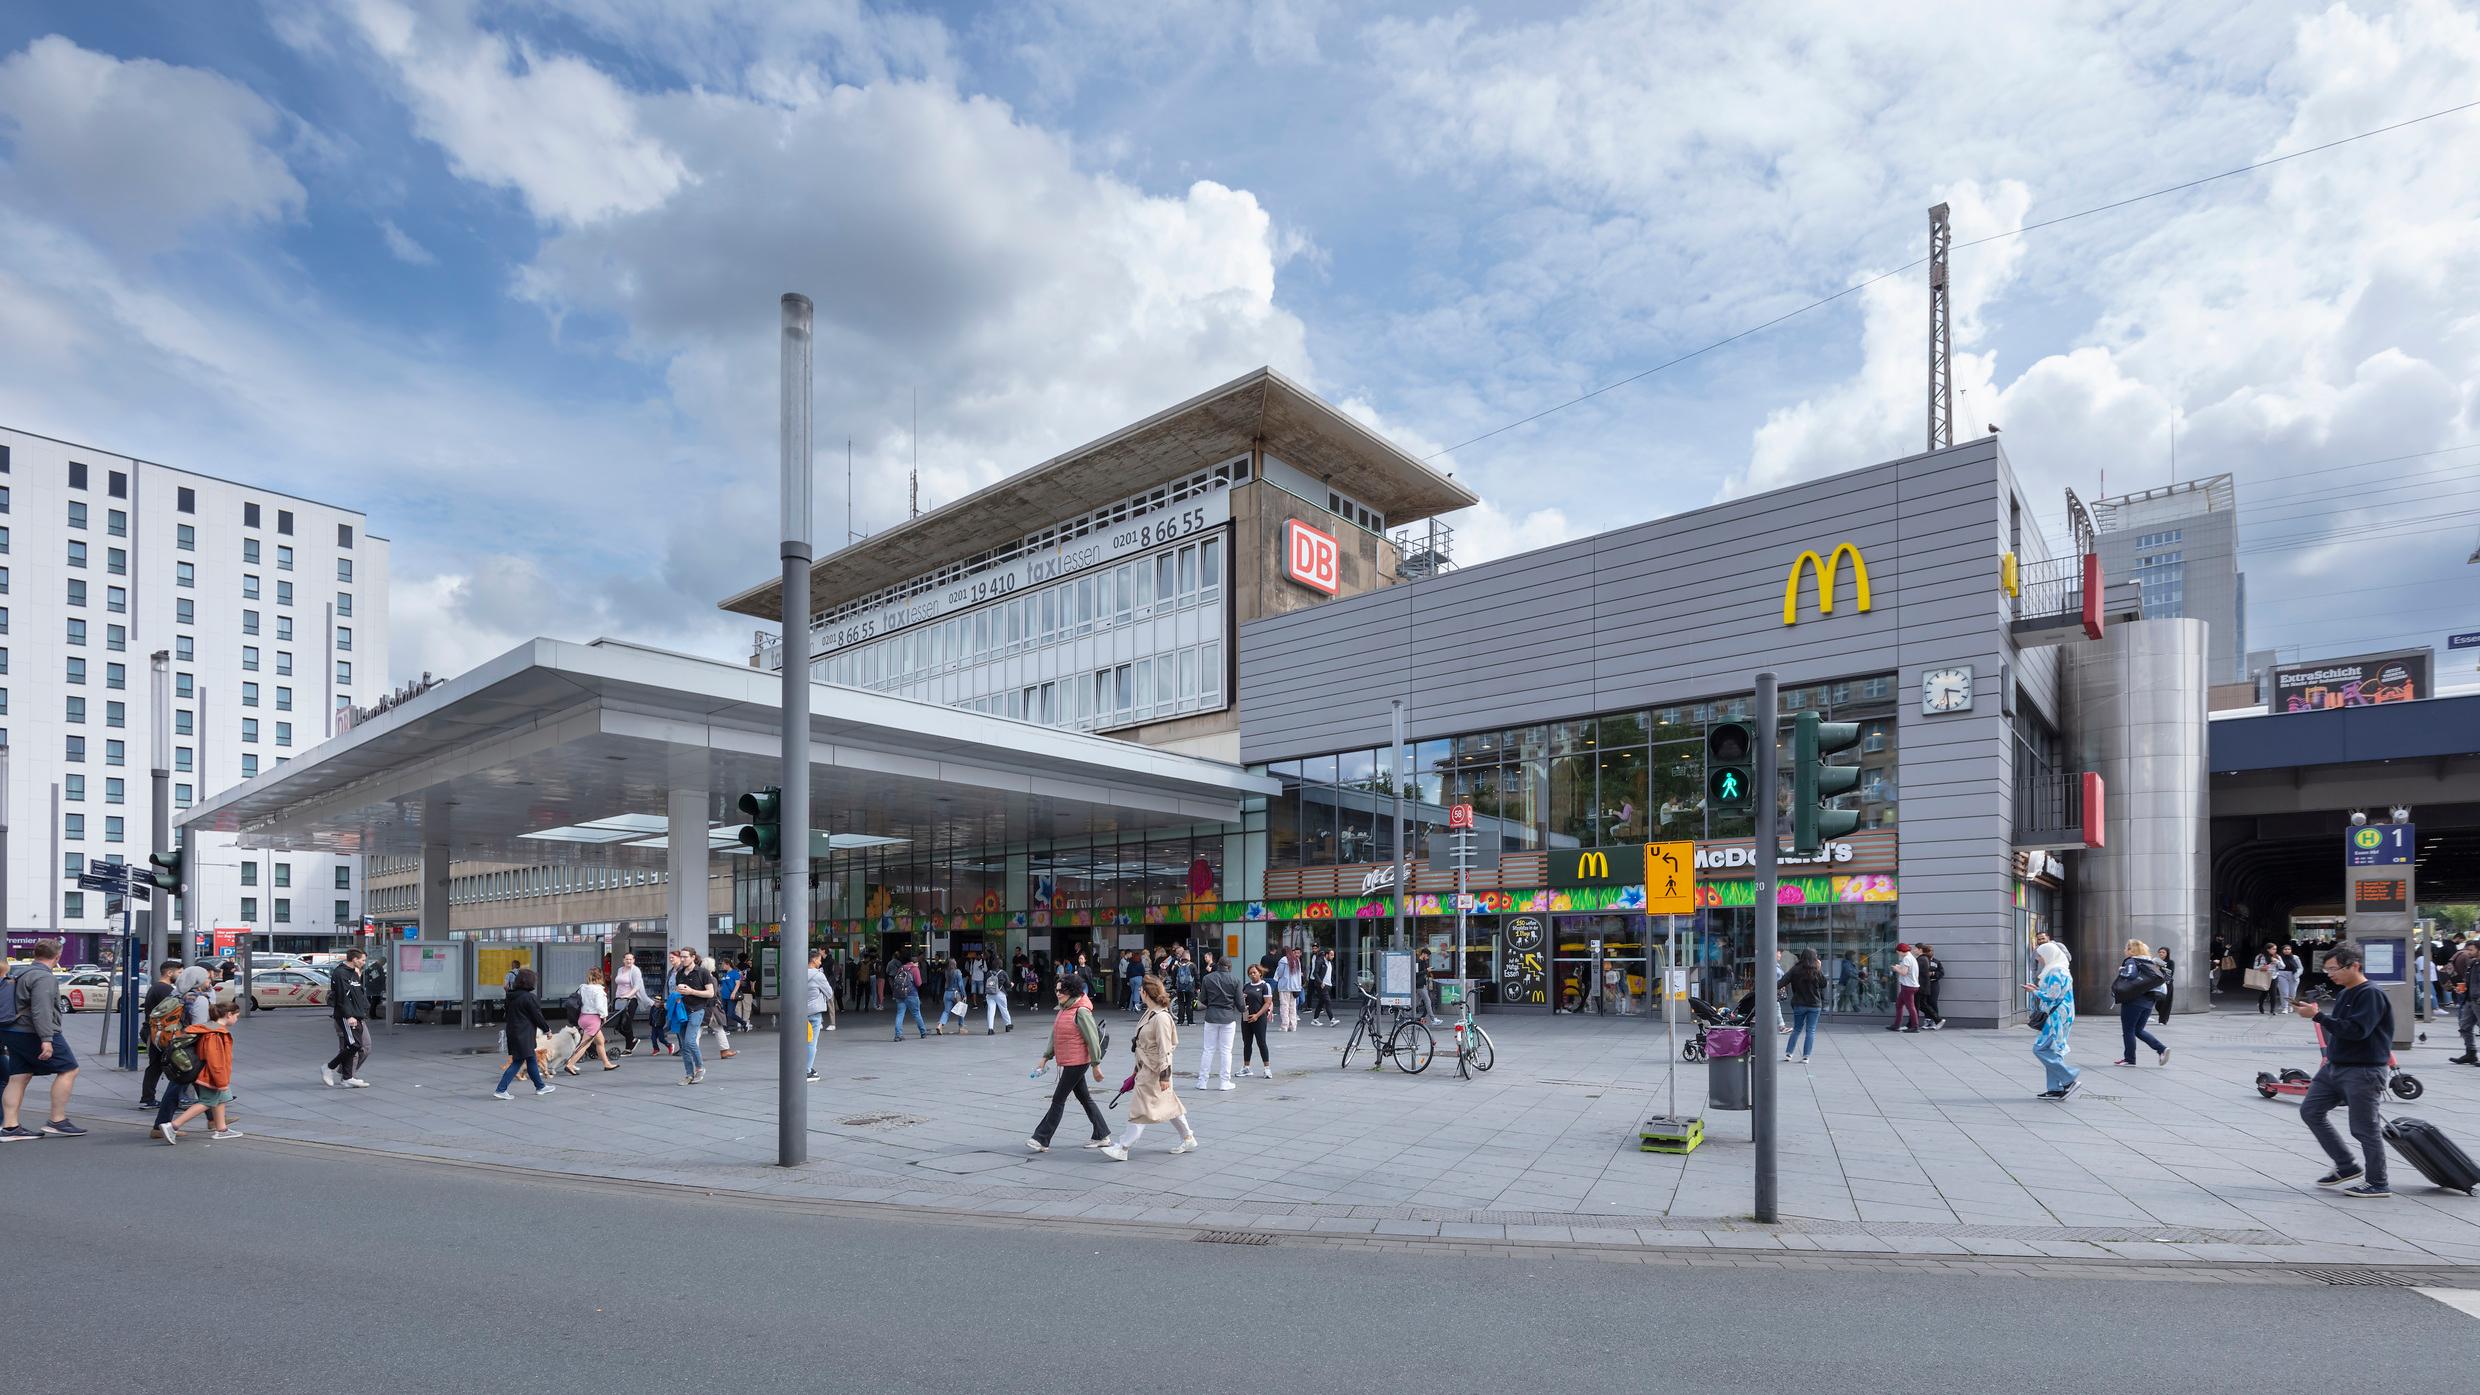 Der Blick auf das Empfangsgebäude des Bahnhofs Essen Hauptbahnhof.